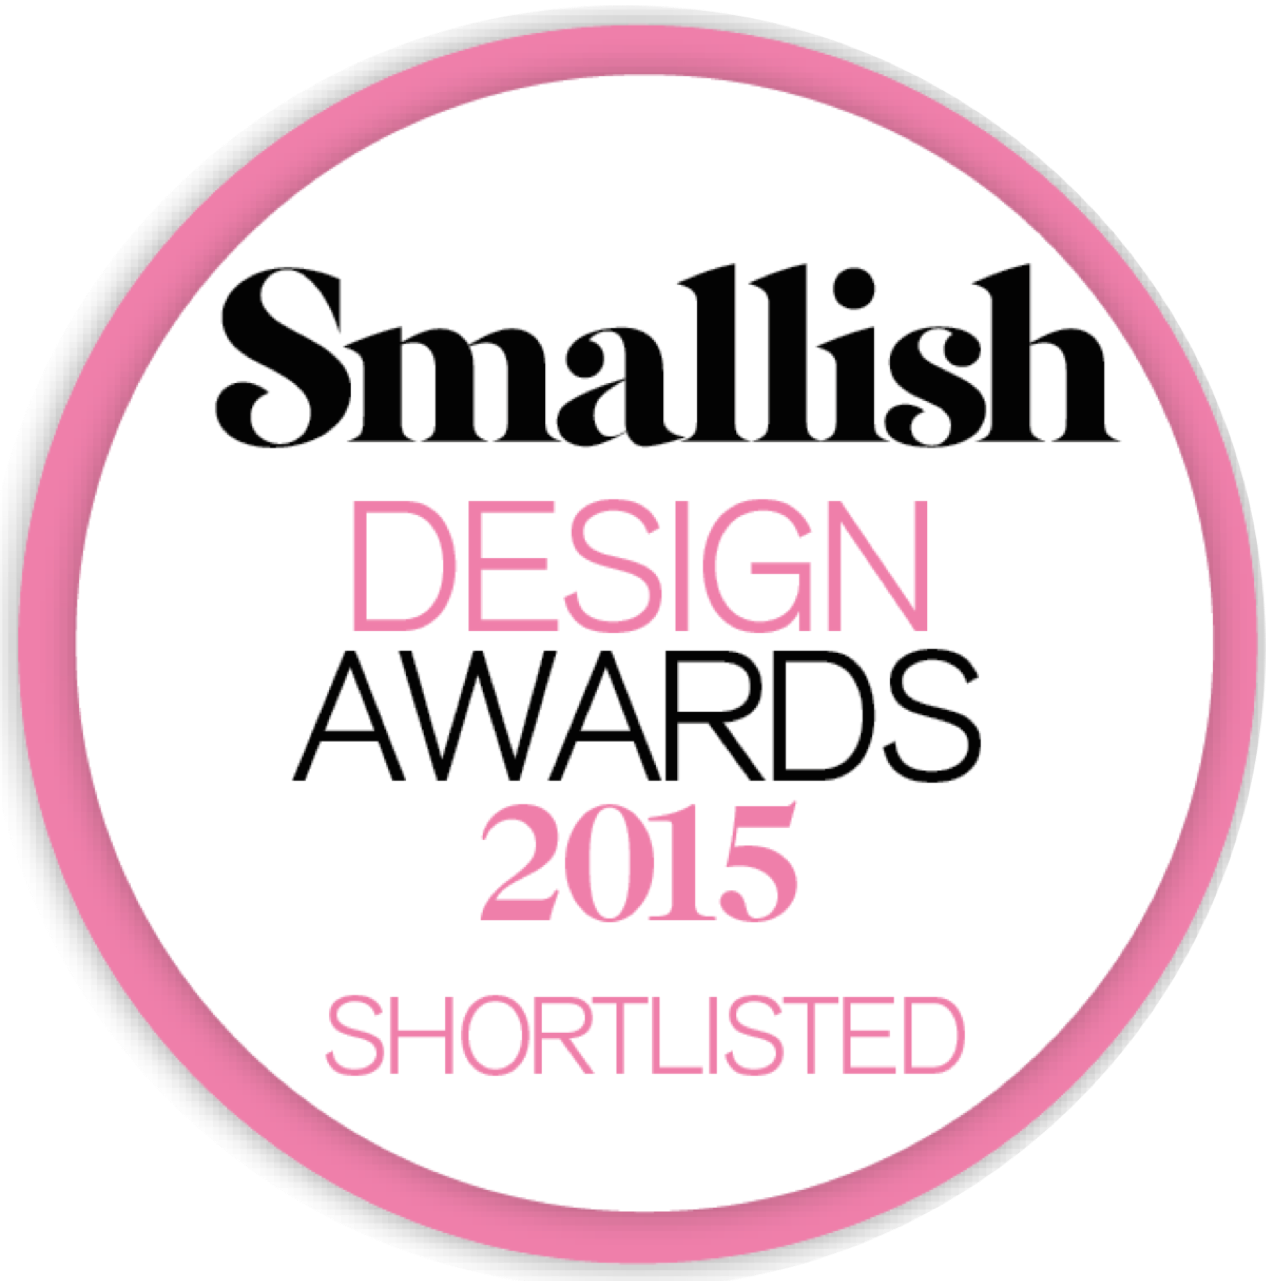 Smallish Design Awards 2015: Shortlisted